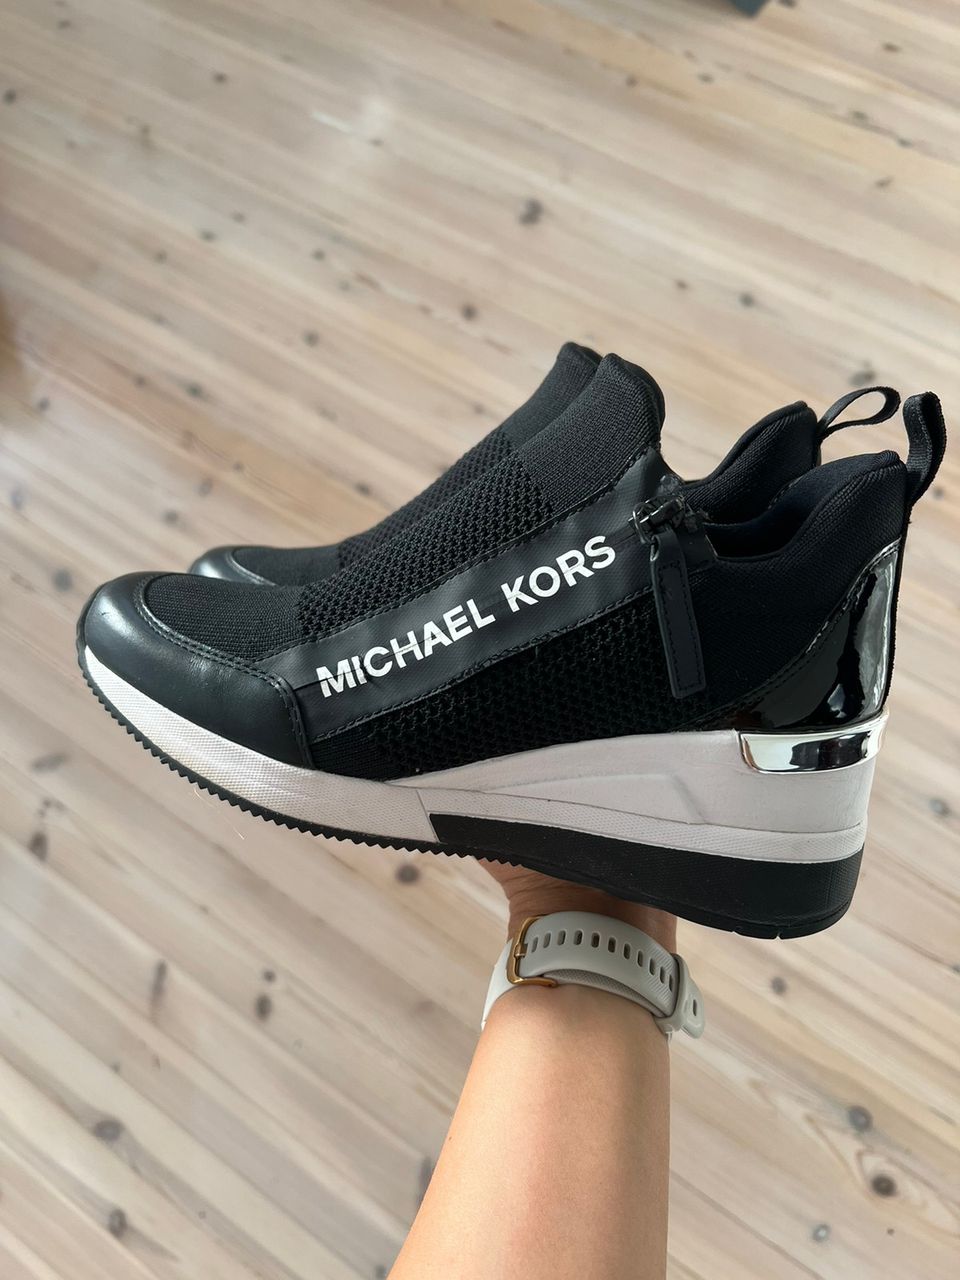 Michael kors kengät, 37,5